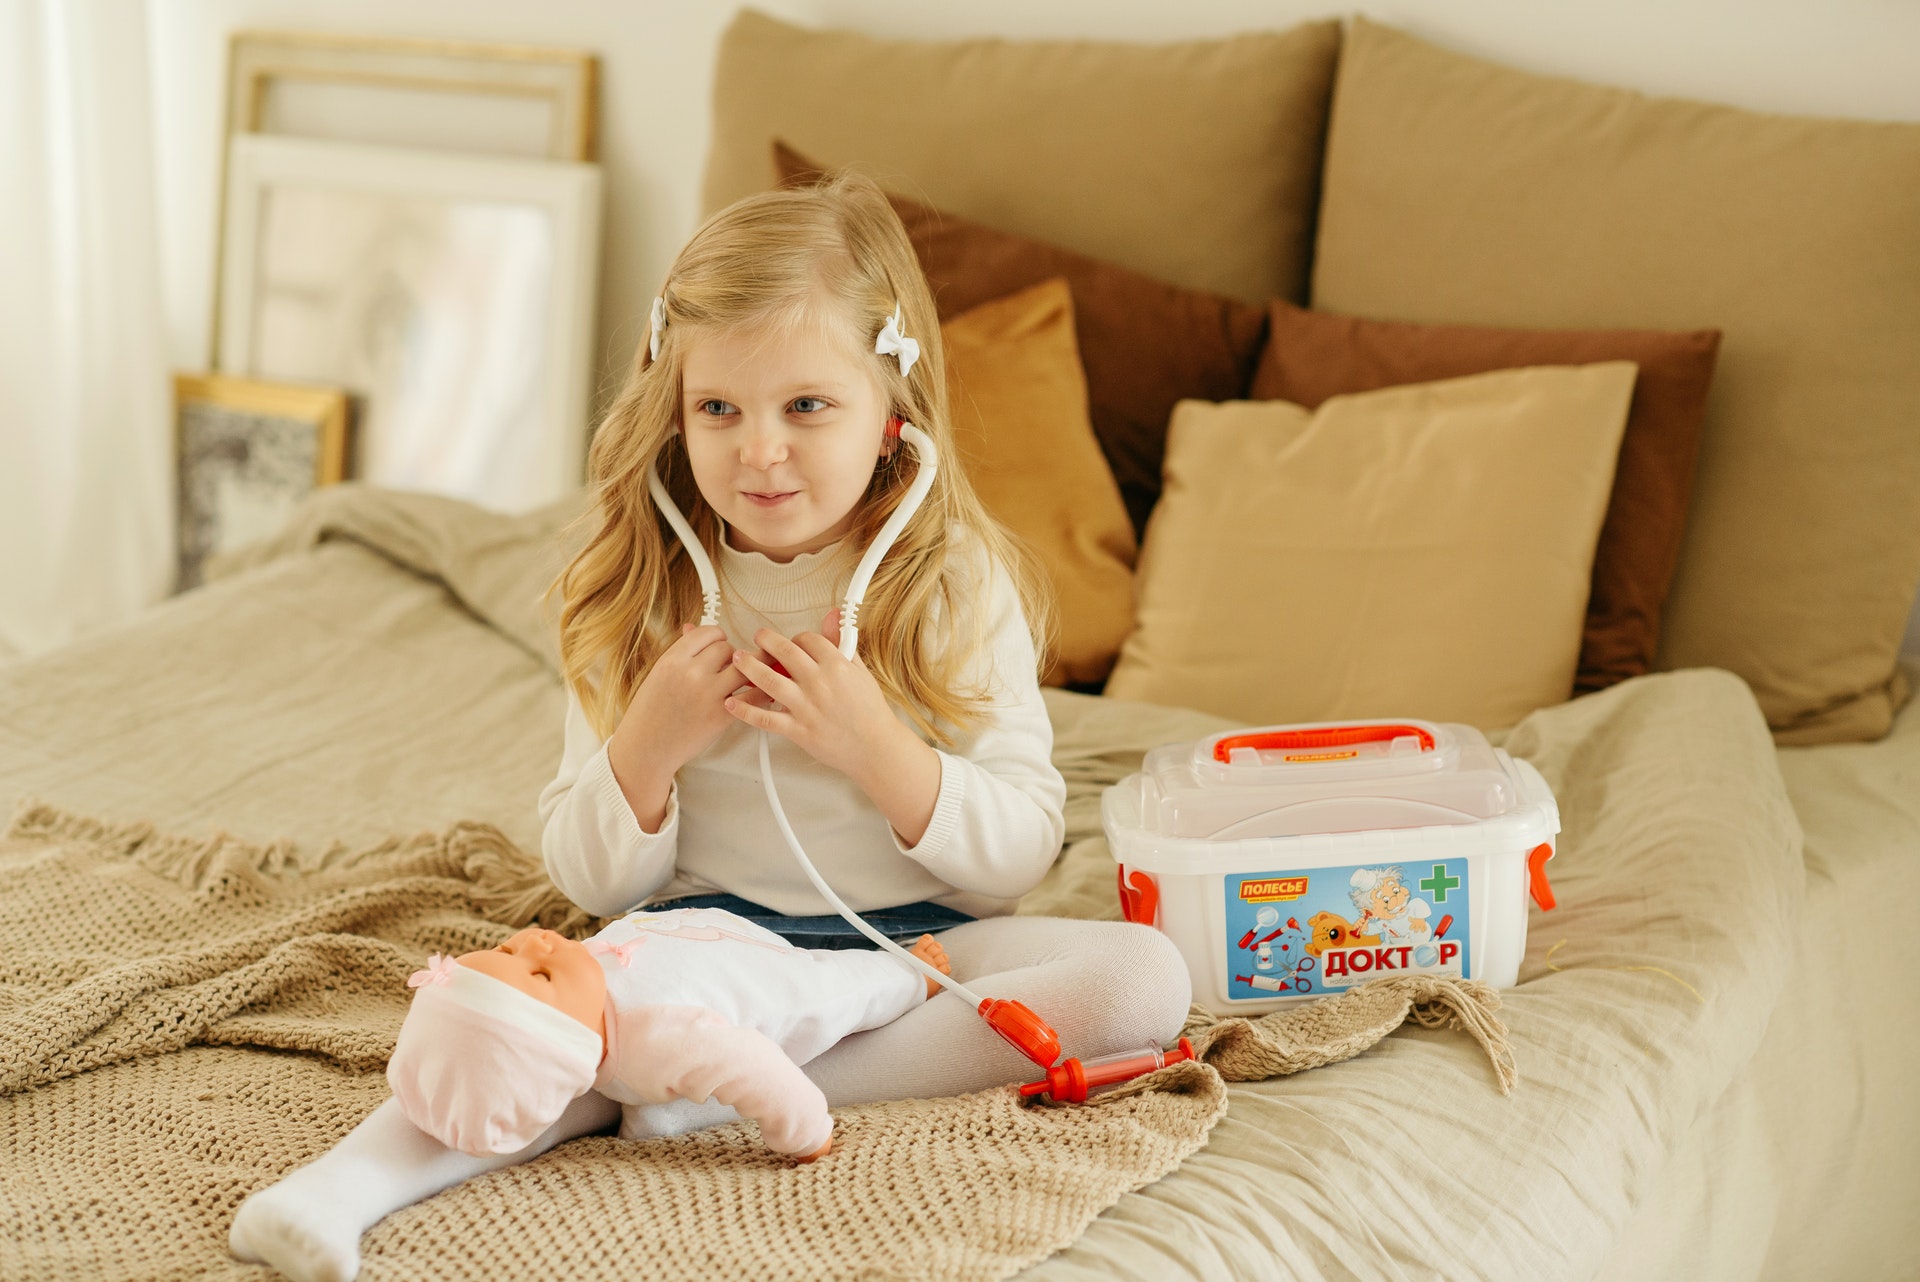 Criança com brinquedos em cima de uma cama. Imagem ilustrativa do texto sobre negocios online.